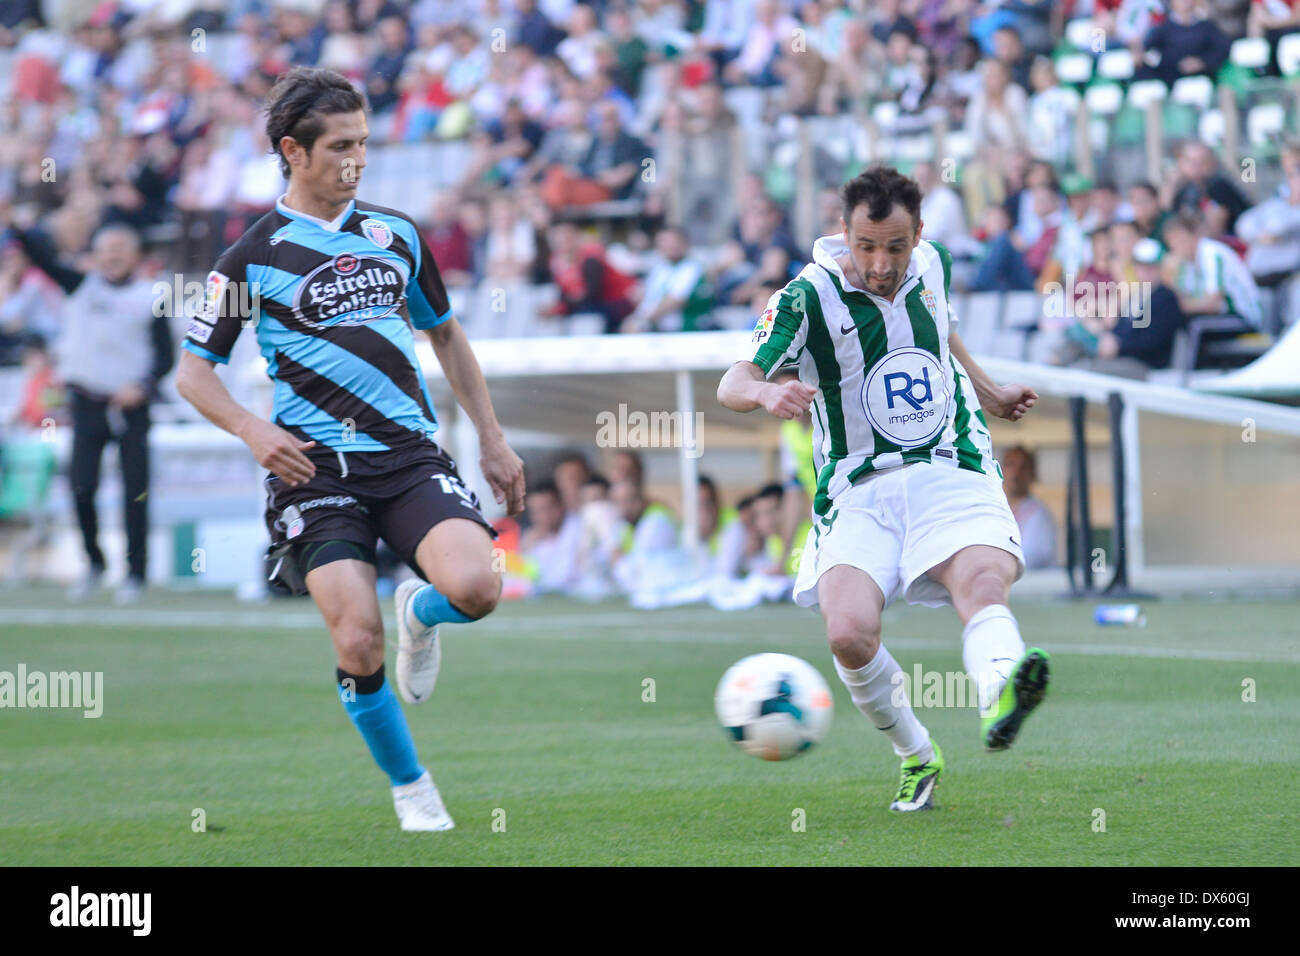 CORDOBA, Spanien - März 16: L? Pez Silva W(19) in Aktion während Spiel Liga Cordoba (W) Vs Lugo (B)(1-1) im städtischen Stadion Stockfoto